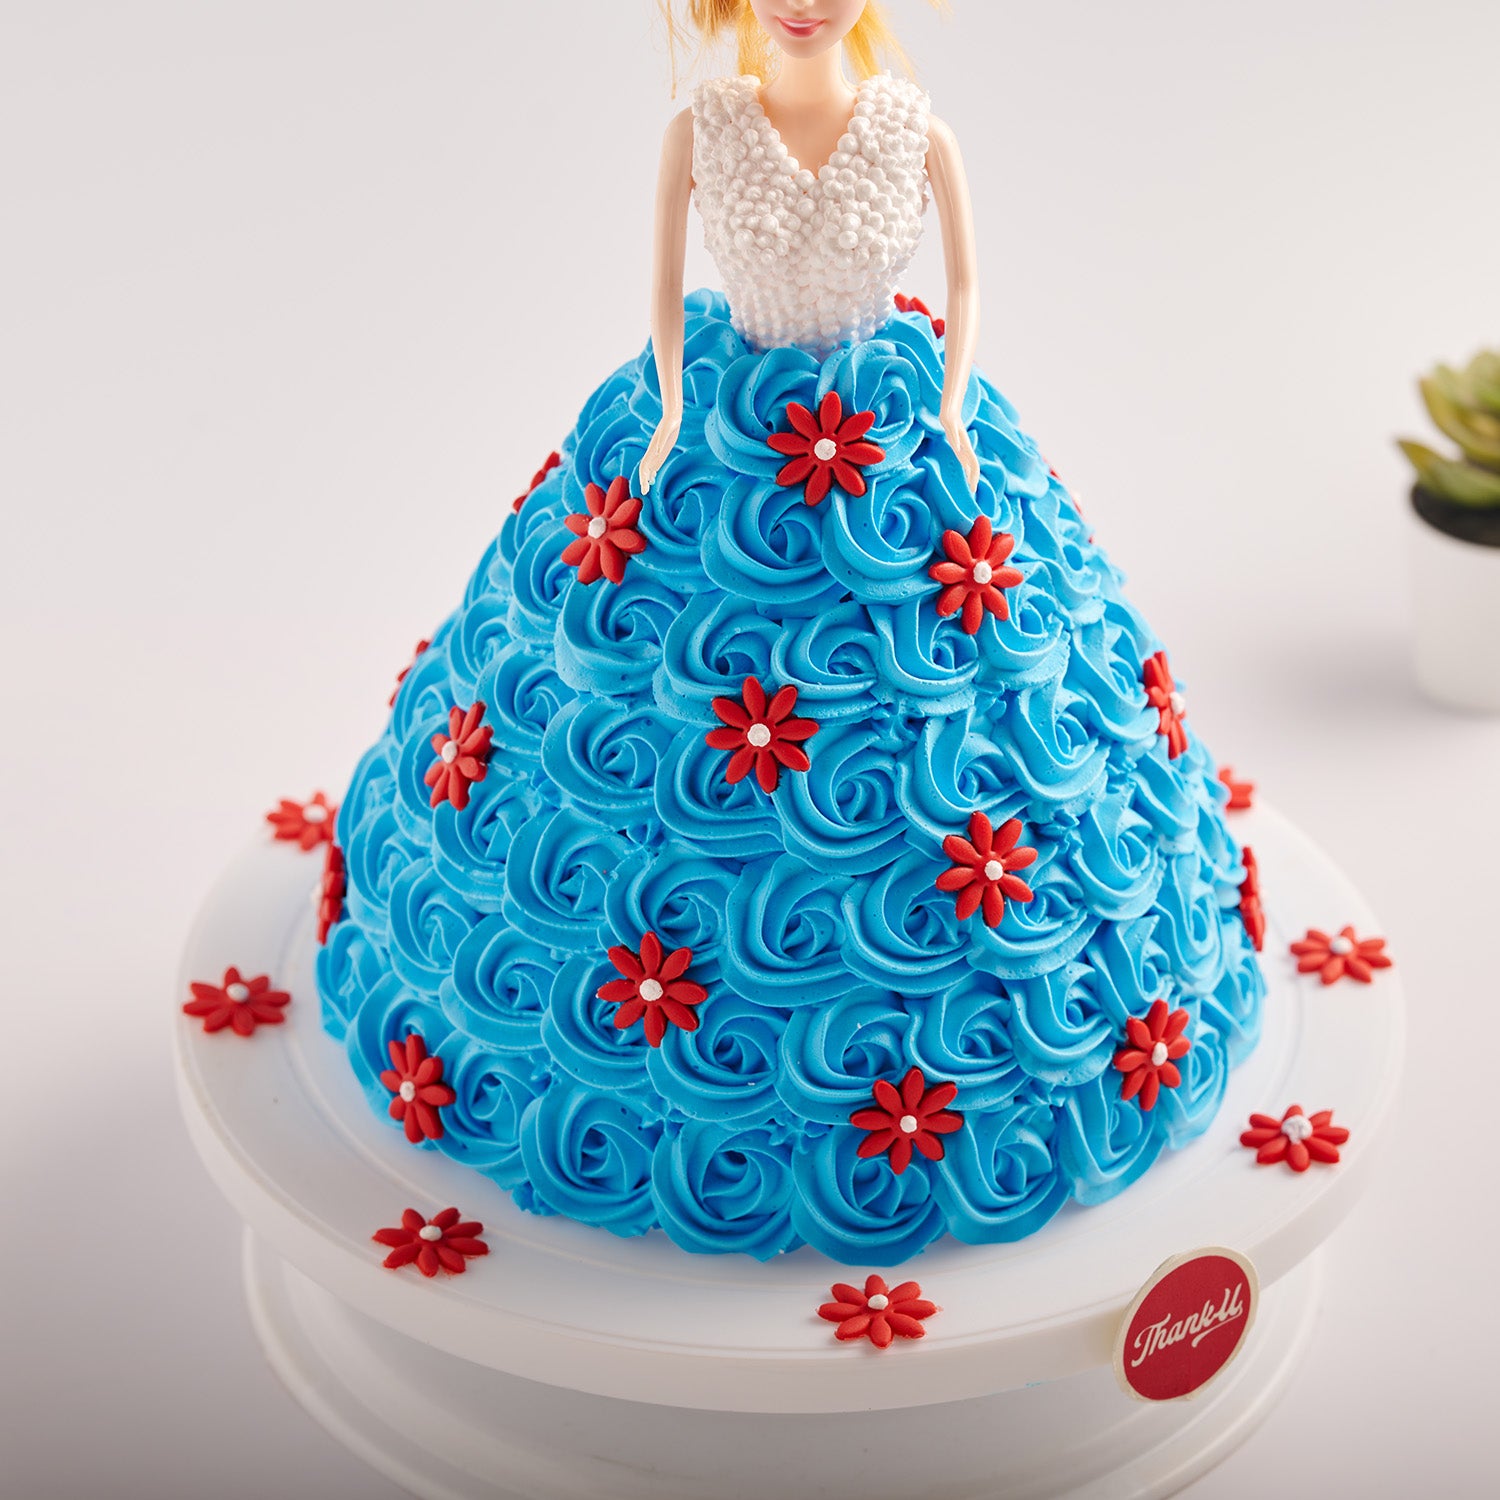 barbie cake for a @barbie themed birthday party❤️ @barbiethemovie  #comeonbarbieletsgobake #cakesofinstagram #cakestagram #cakes… | Instagram